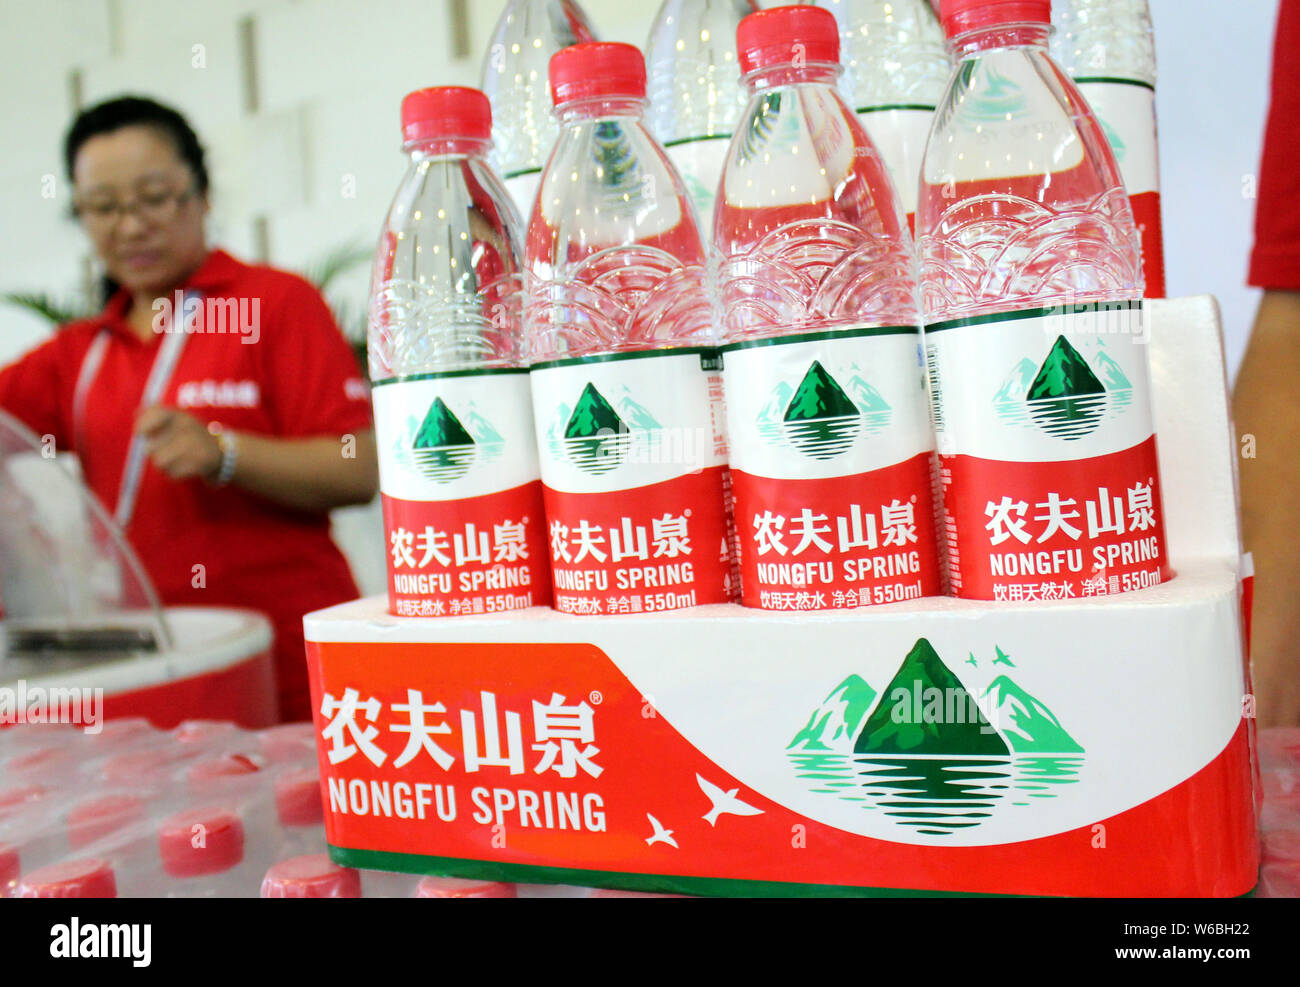 ------ Flaschen Nongfu Quellwasser sind für den Verkauf in einem Supermarkt in Nanjing, Provinz Jiangsu im Osten Chinas, den 2. September 2015. Lokale Marken Stockfoto